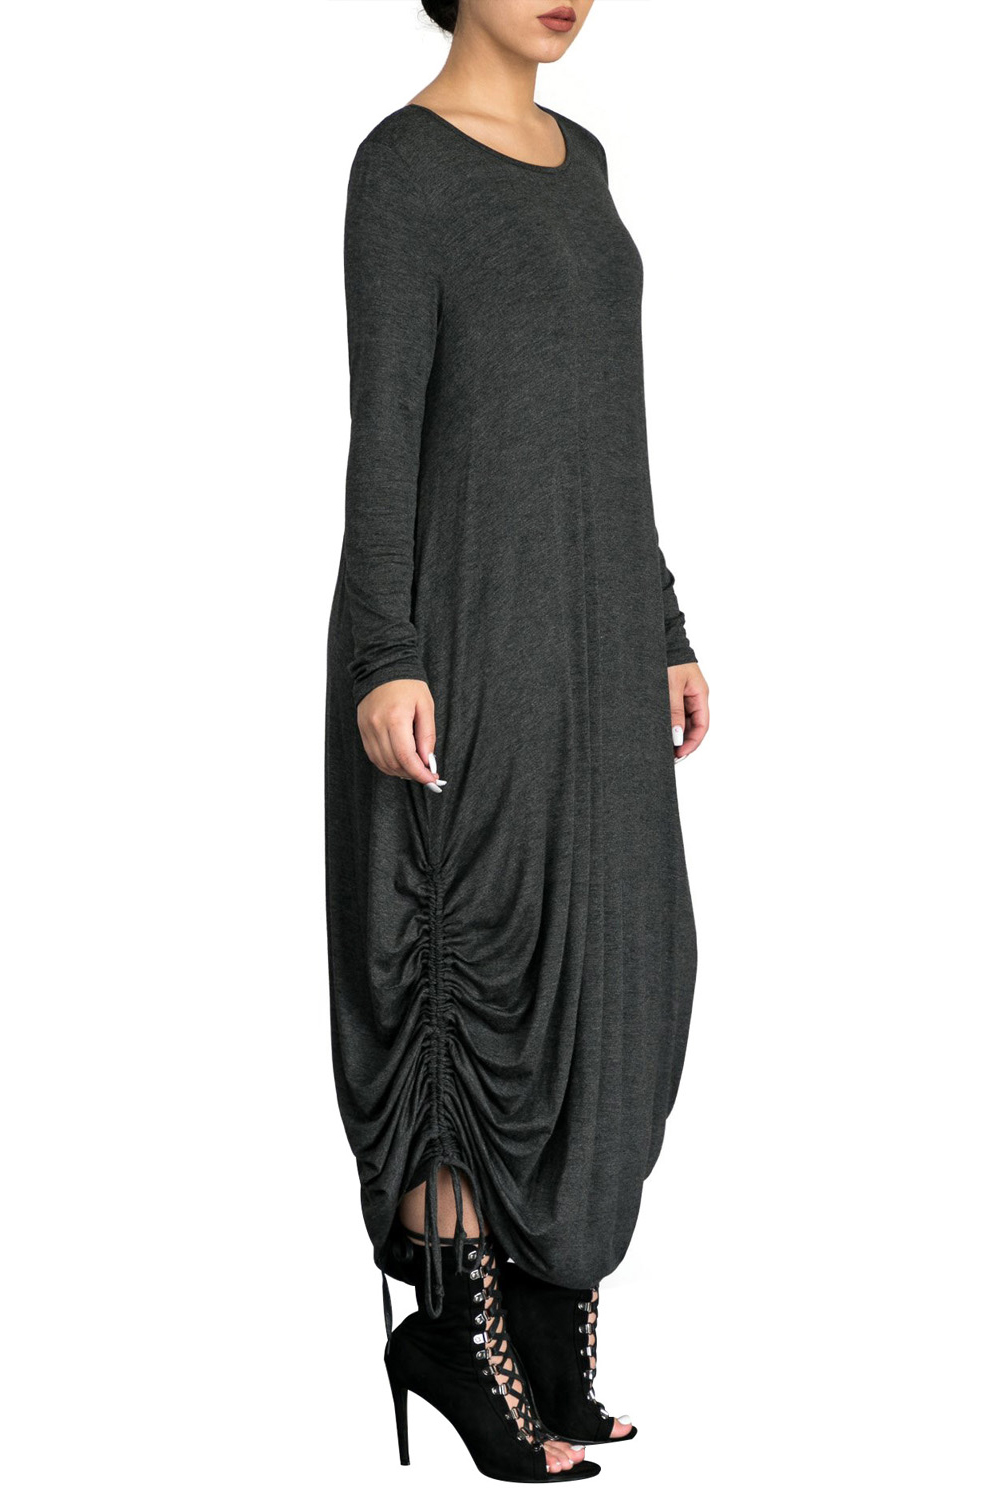 Купить Платье Балахон В Интернет Магазине